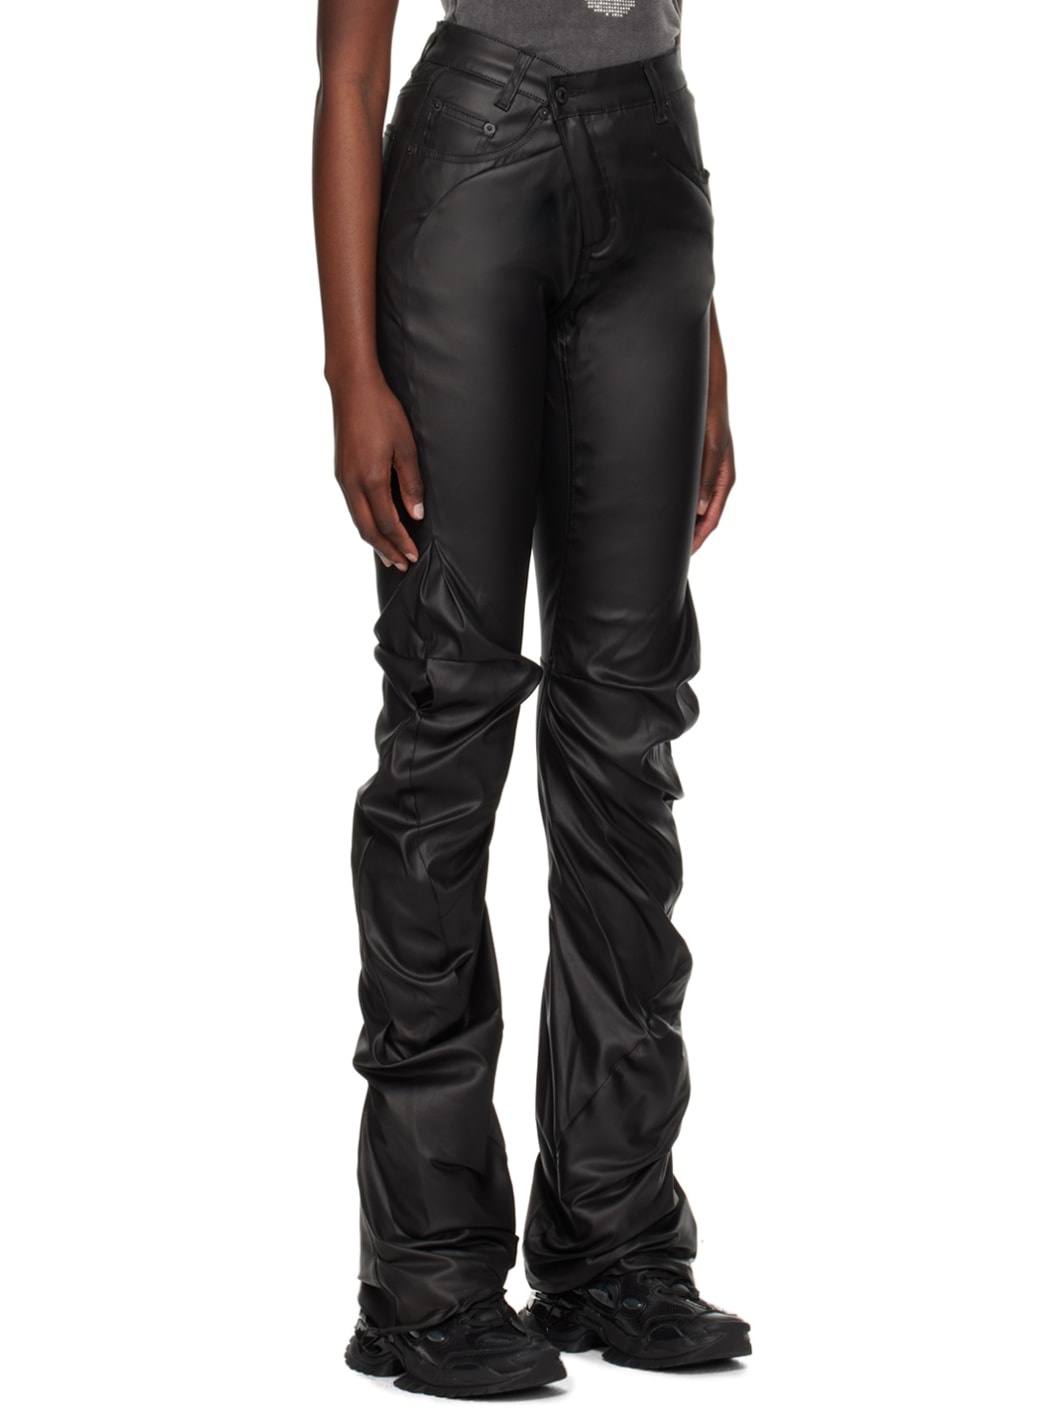 SSENSE Exclusive Black Faux-Leather Pants - 2